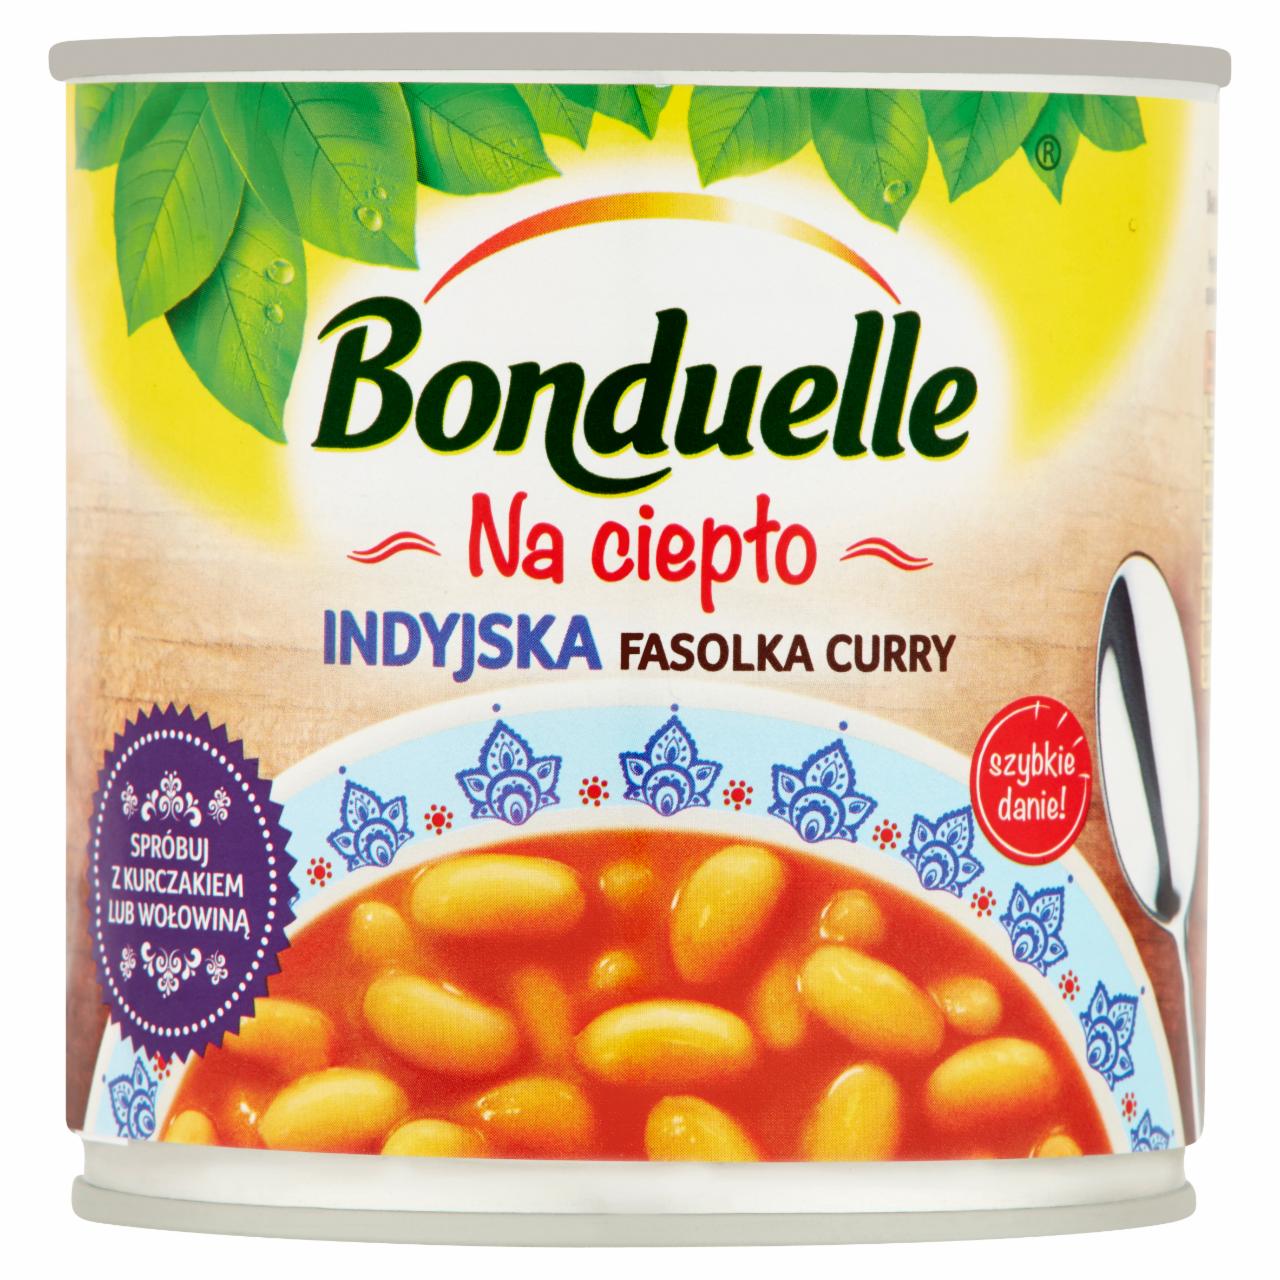 Zdjęcia - Bonduelle Danie na ciepło Indyjska fasolka curry 430 g